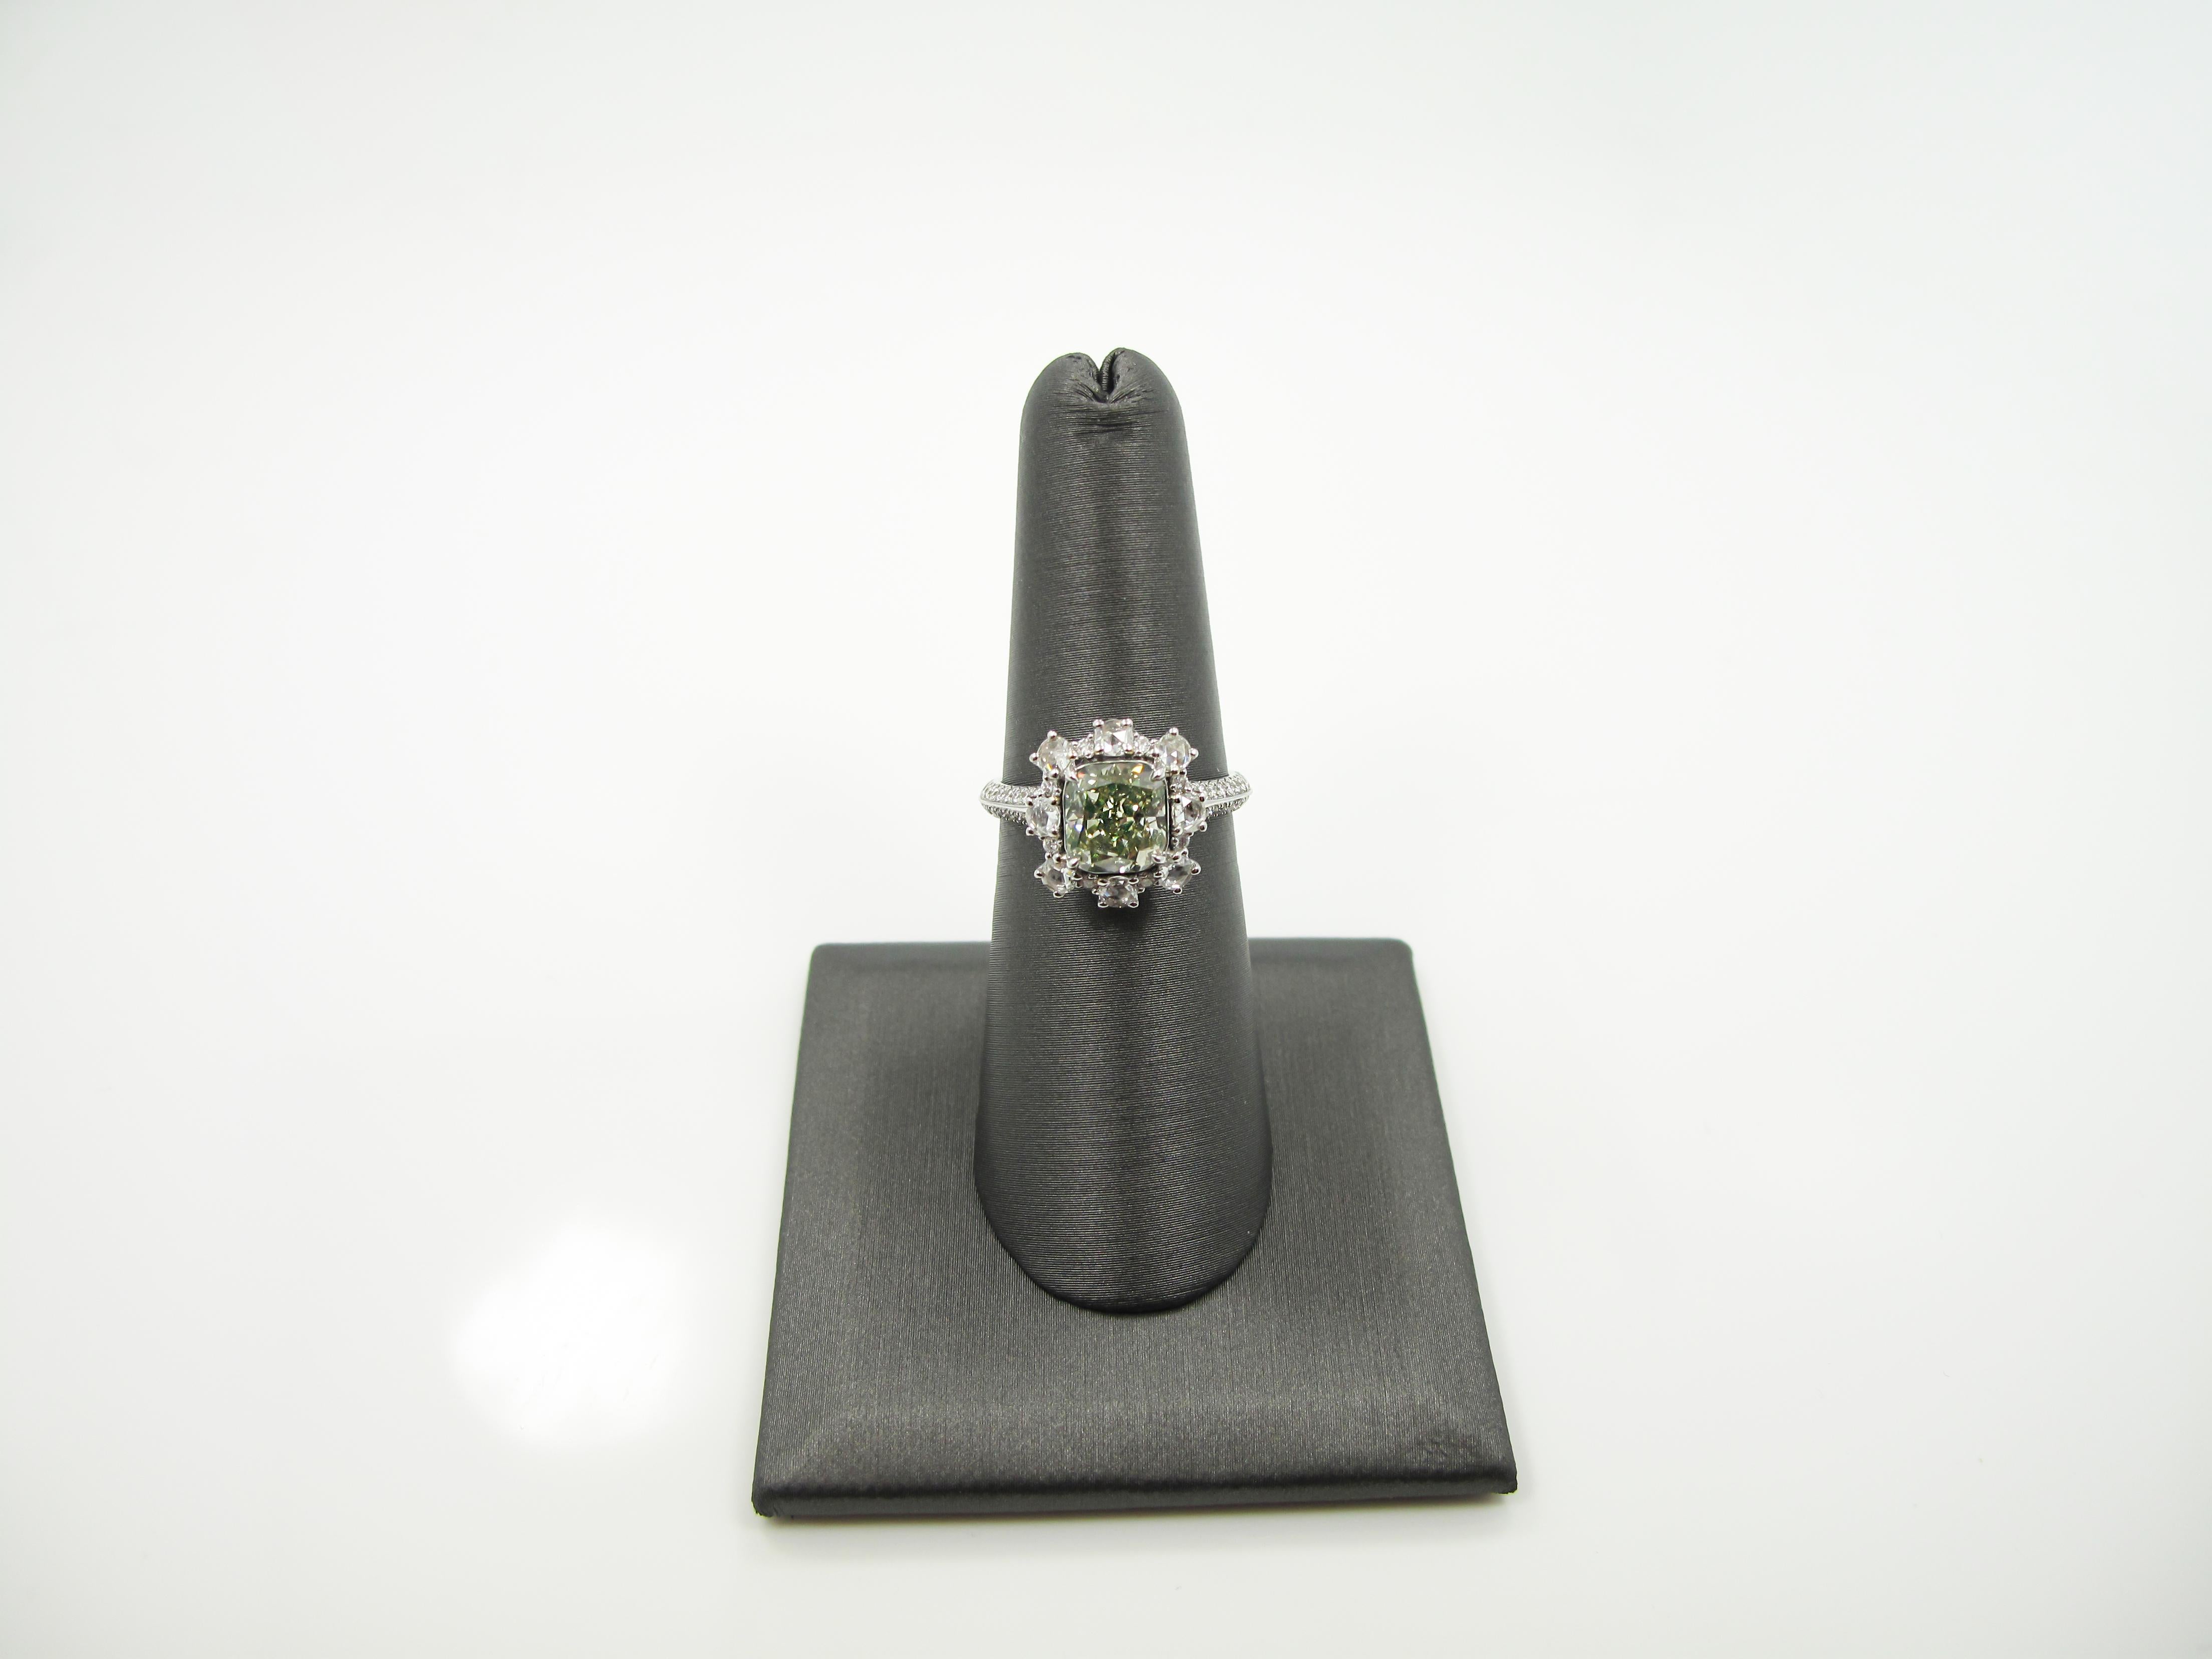 Der Ring ist mit einem braun-grünlich-gelben, runden, rechteckigen (kissenförmigen, modifizierten Brillanten) natürlichen Diamanten mit einem Gewicht von ca.  2,08 ct, Reinheit SI1, Abmessungen 7,15x6,55x4,72 mm.  Er wird von dem GIA-Zertifikat Nr.